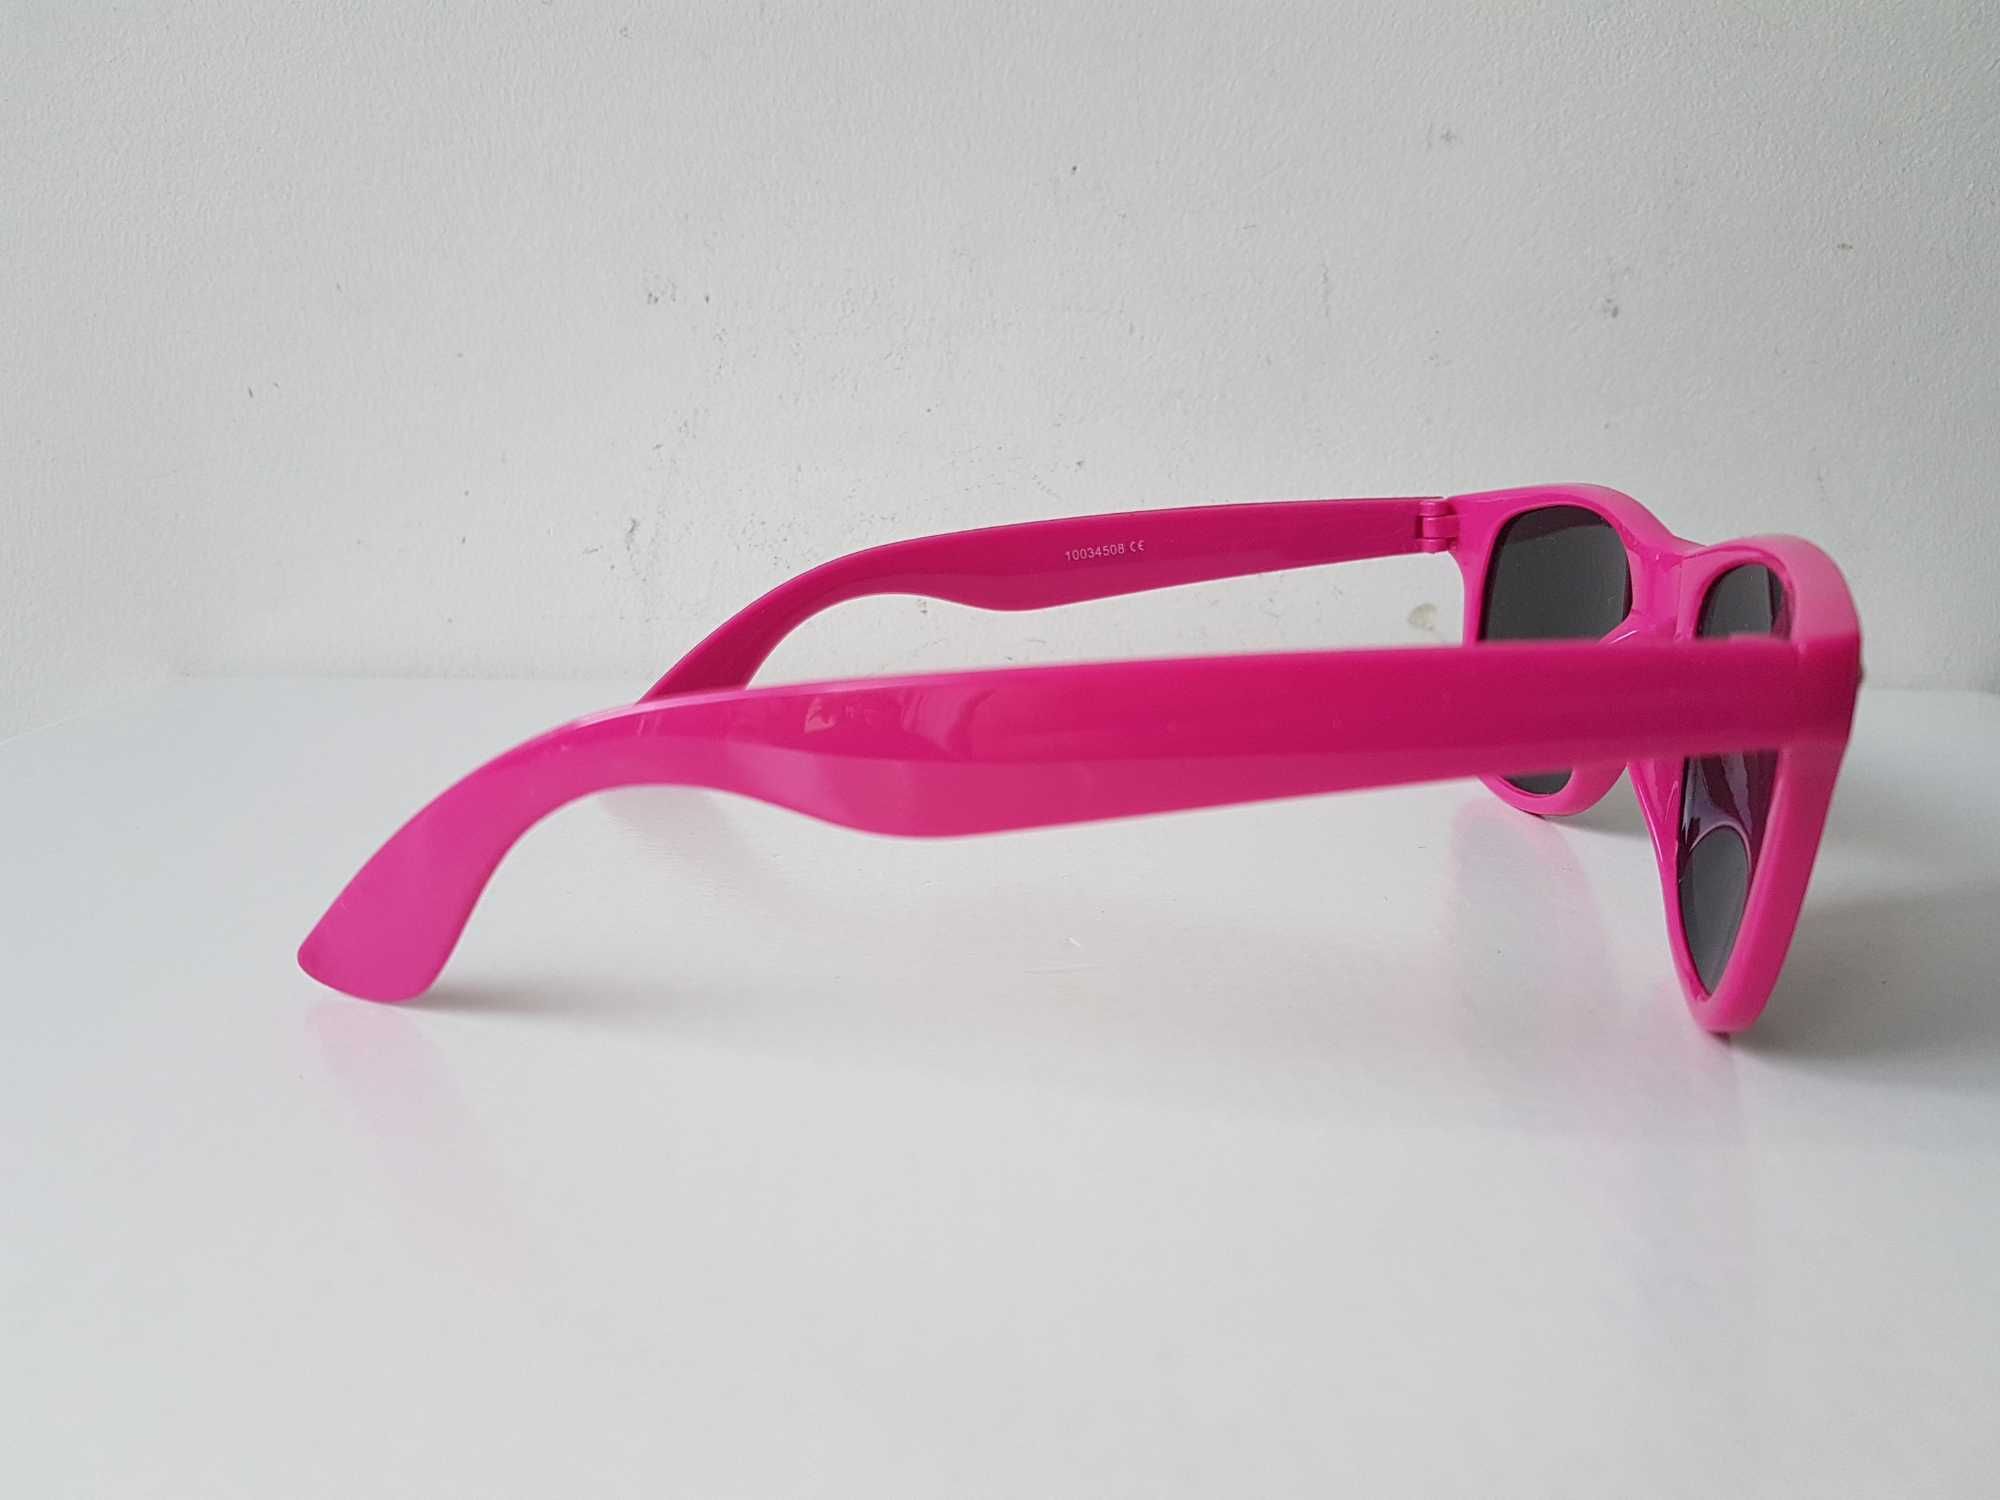 Okulary przeciwsłoneczne różowe nerdy UV400 przyciemniane soczewki